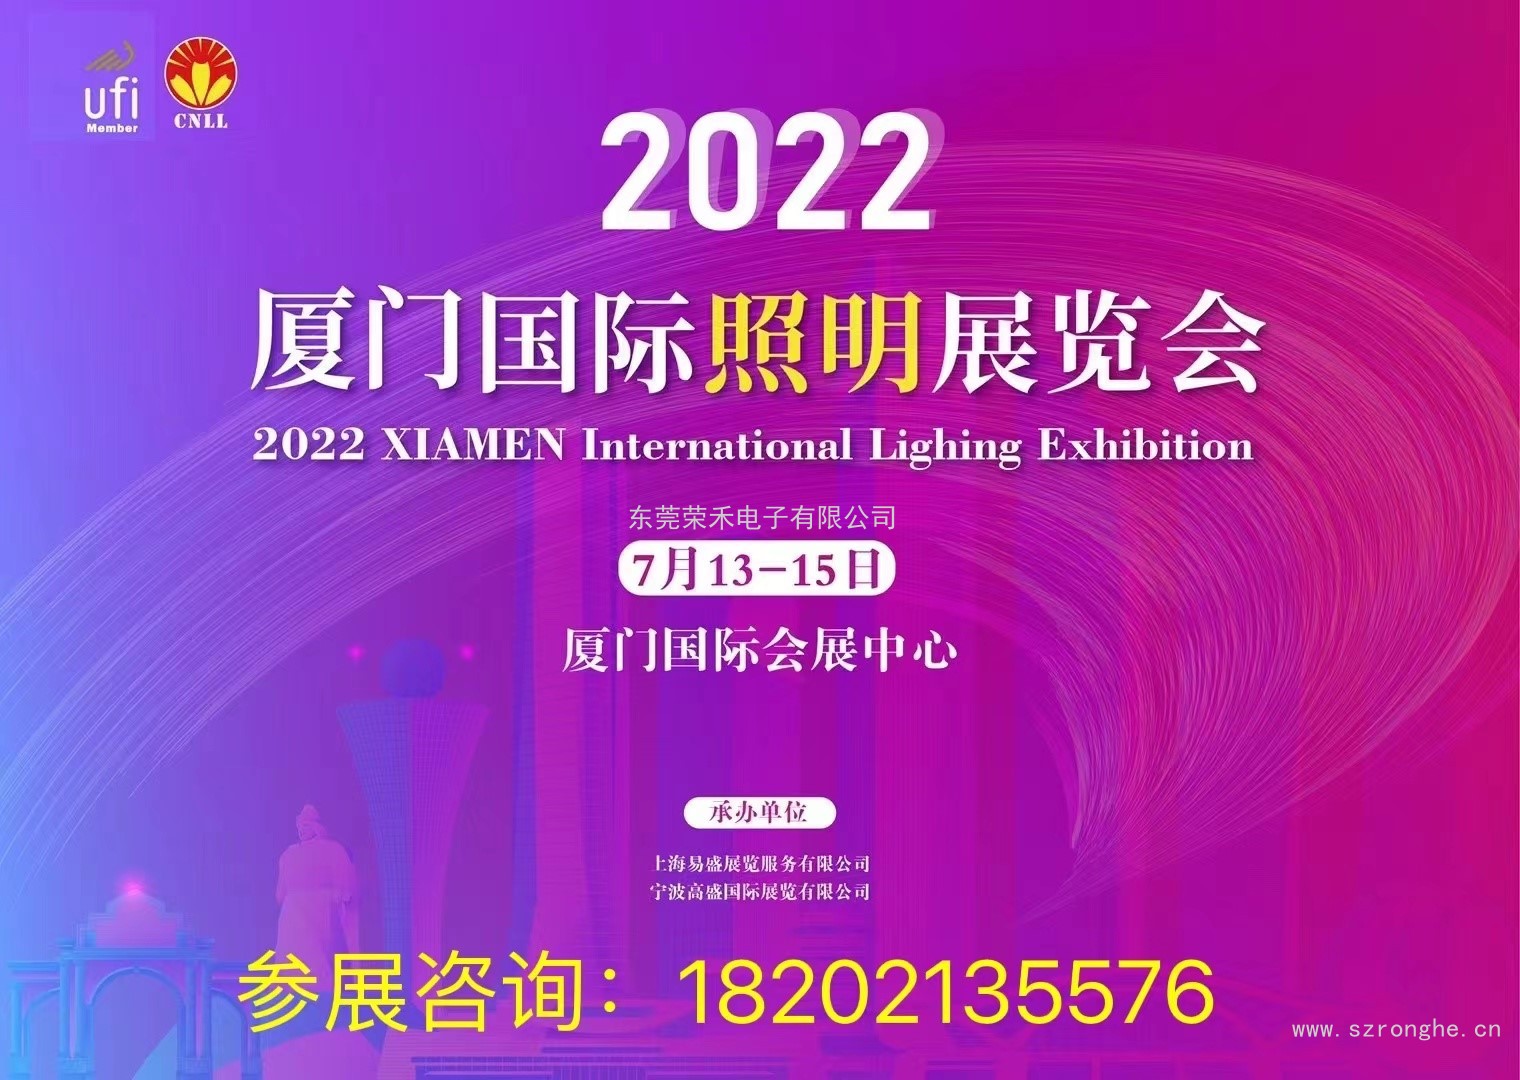 2022厦门国际照明展览会邀您相约厦门共创盛会